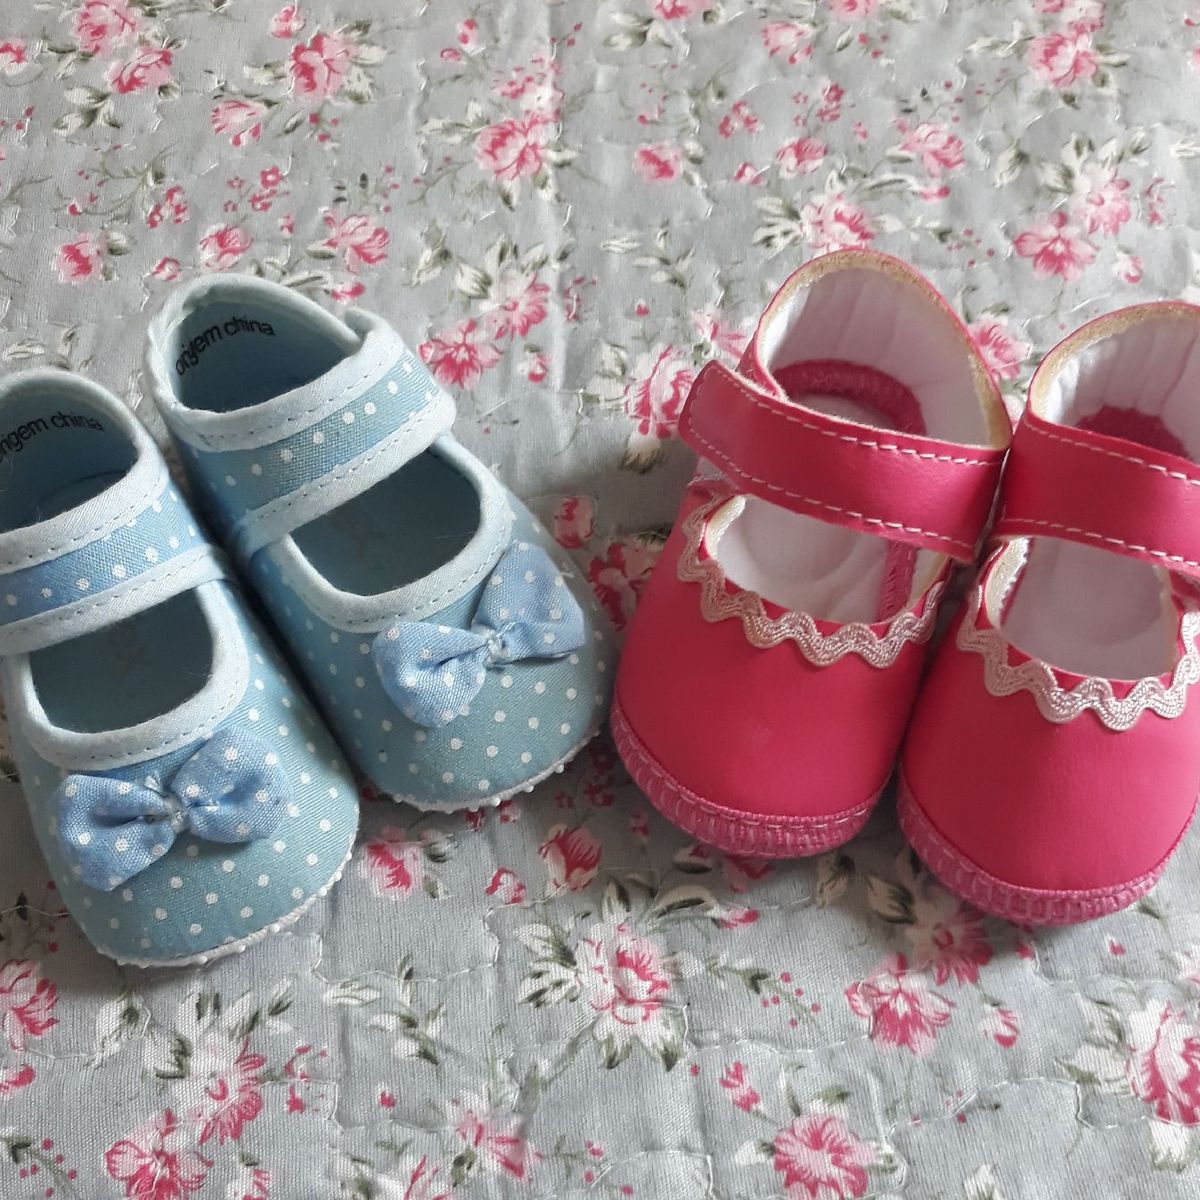 imagem de sapatinho de bebe azul e rosa